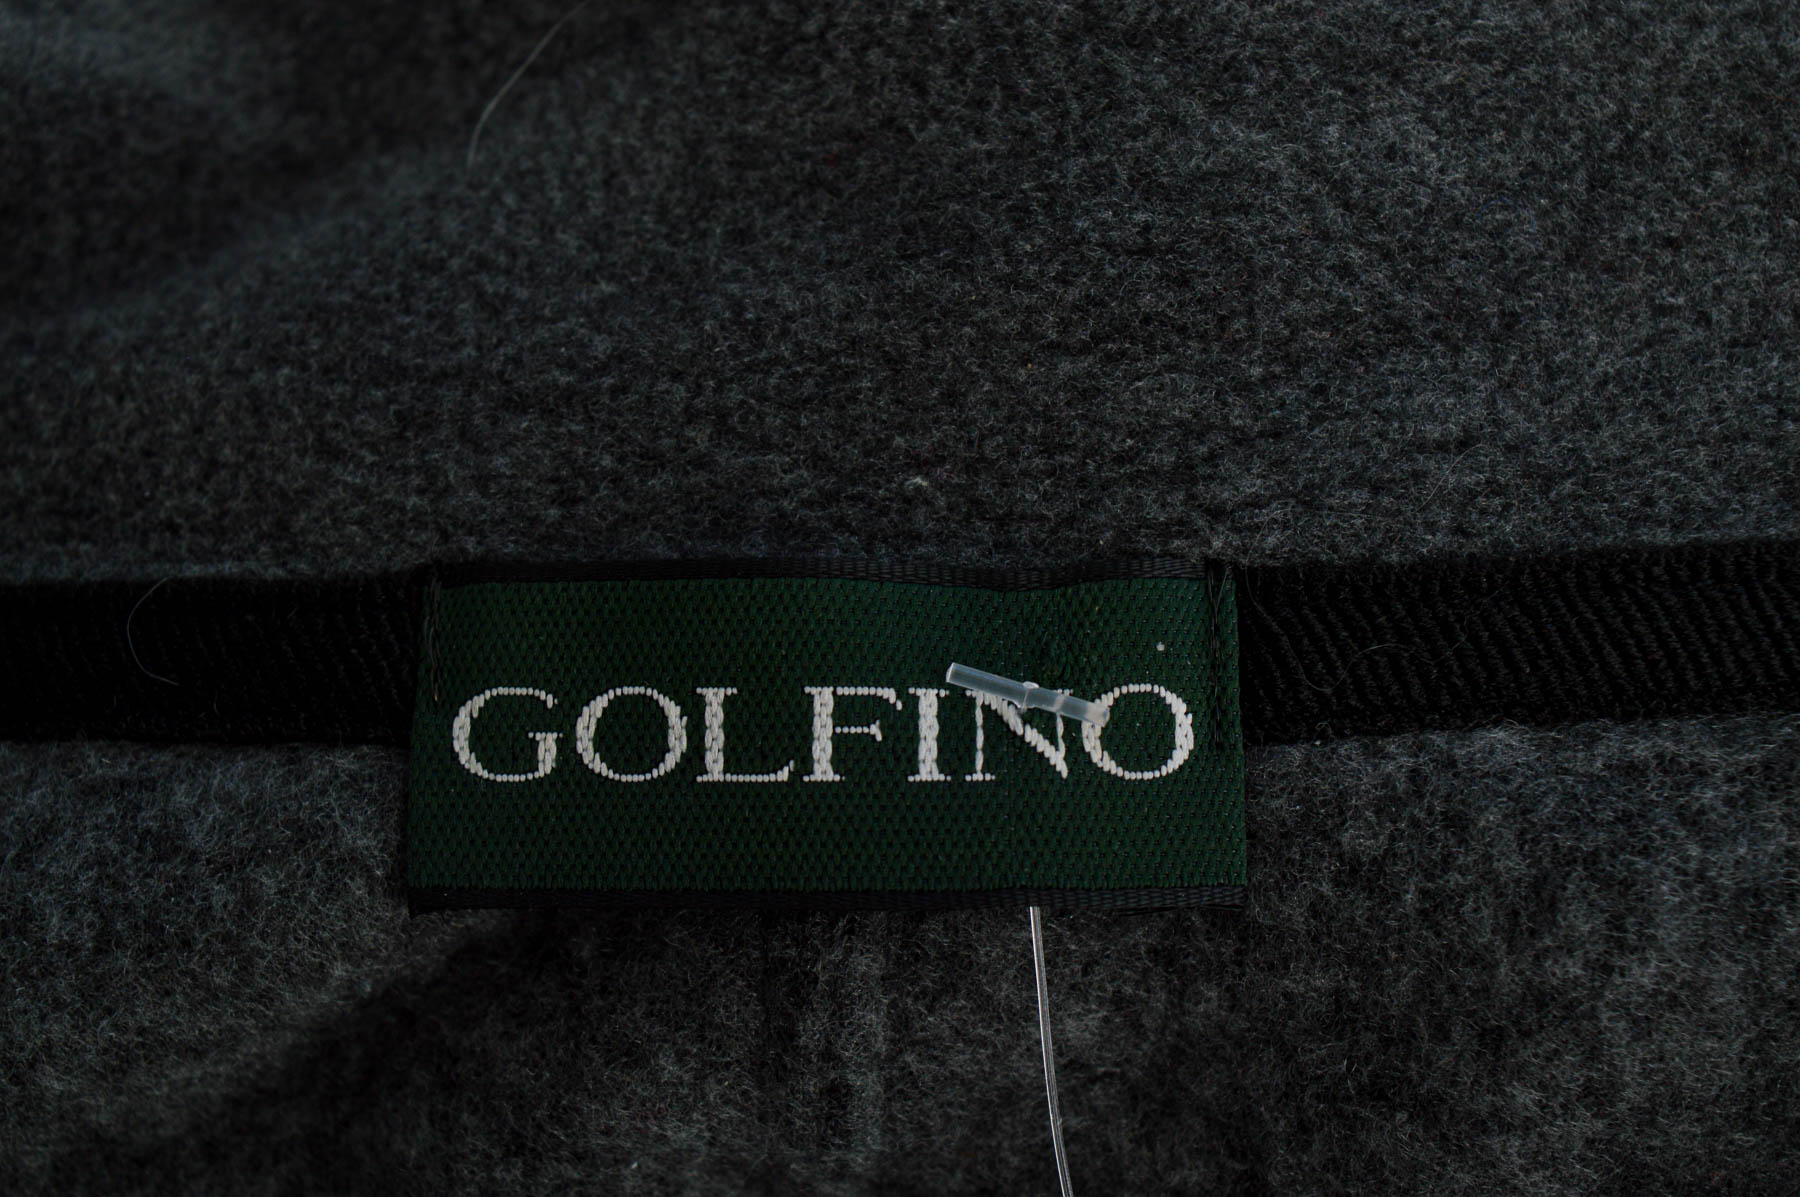 Γυναικείο ρούχο απο πολικό υφασμα - Golfino - 2